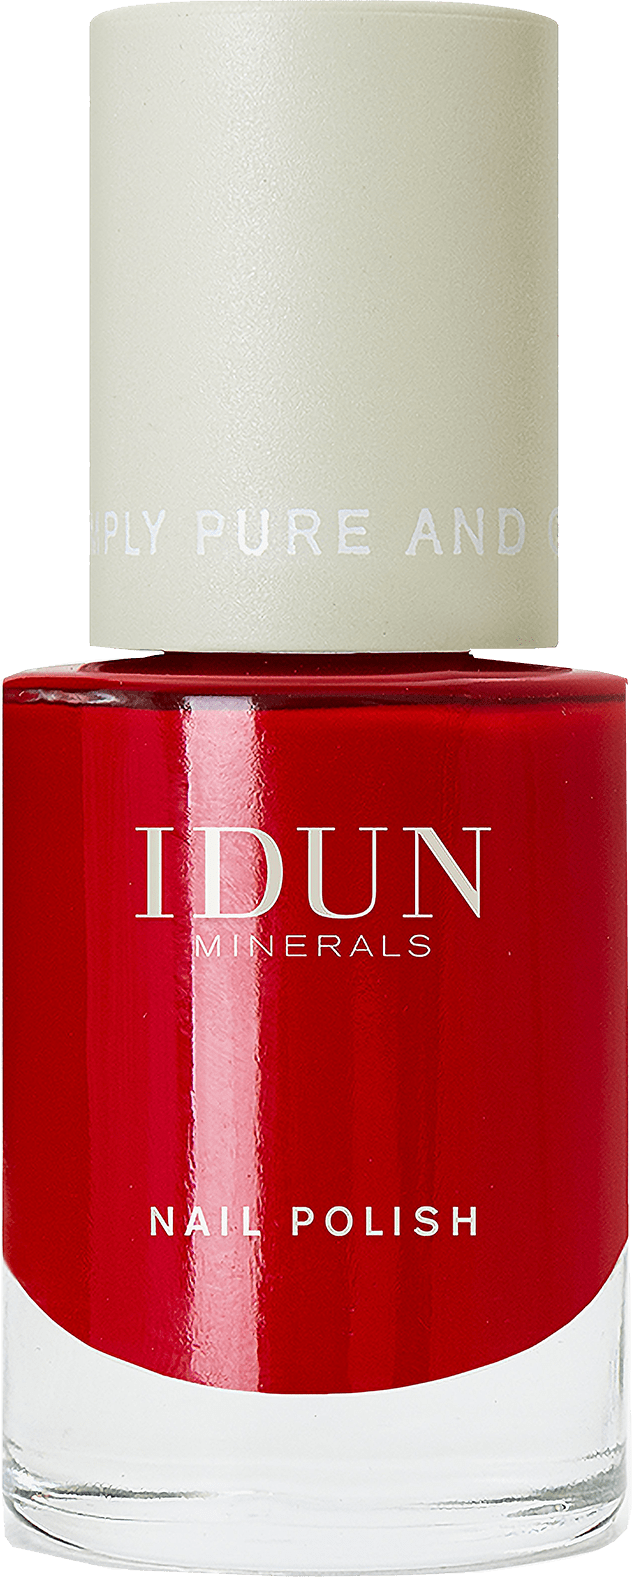 IDUN Minerals Nagellack Rubin